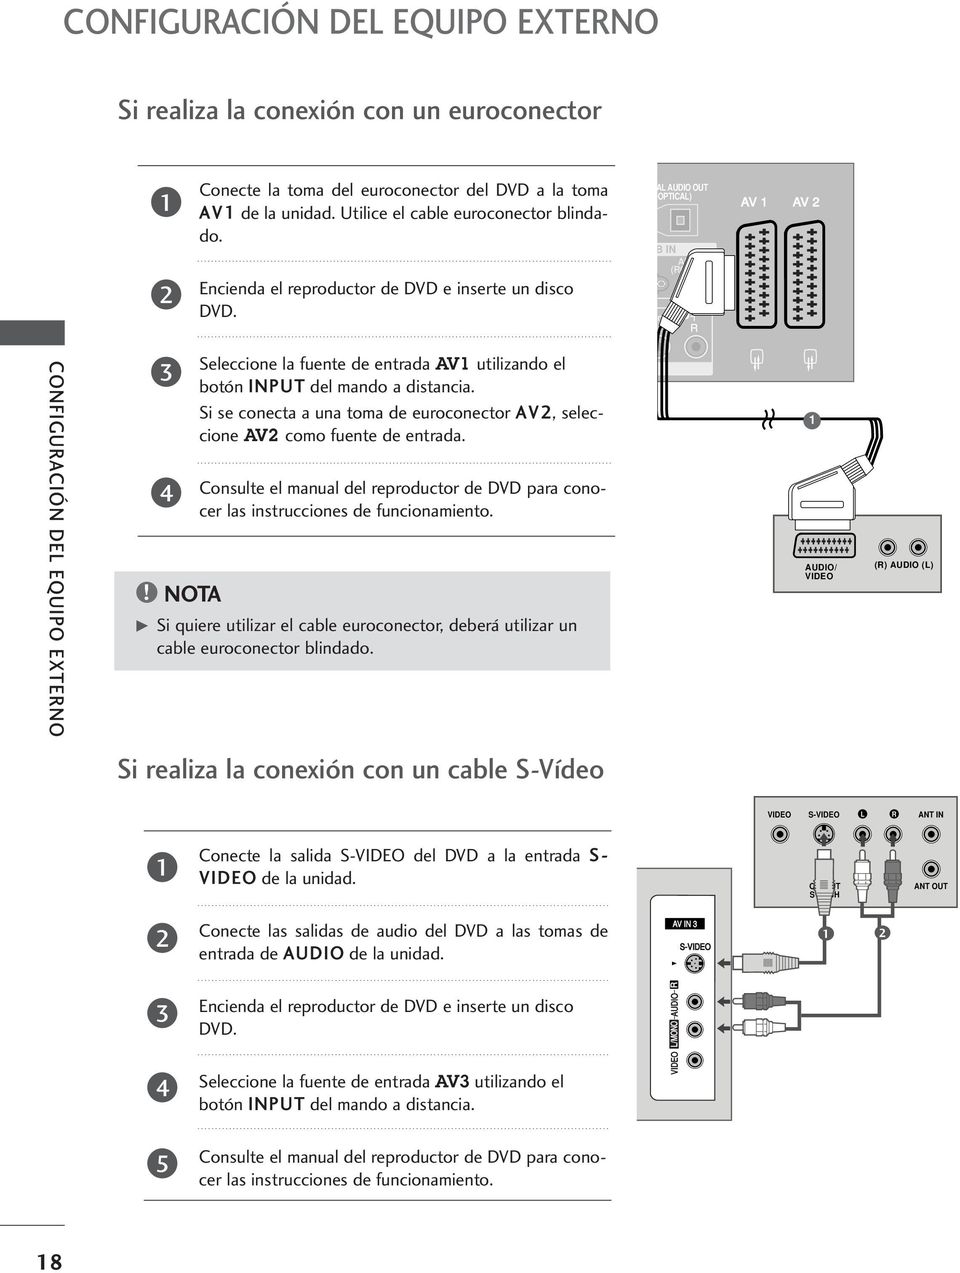 NOTA AV AV Seleccione la fuente de entrada AV utilizando el botón INPUT del mando a distancia. Si se conecta a una toma de euroconector AV, seleccione AV como fuente de entrada.